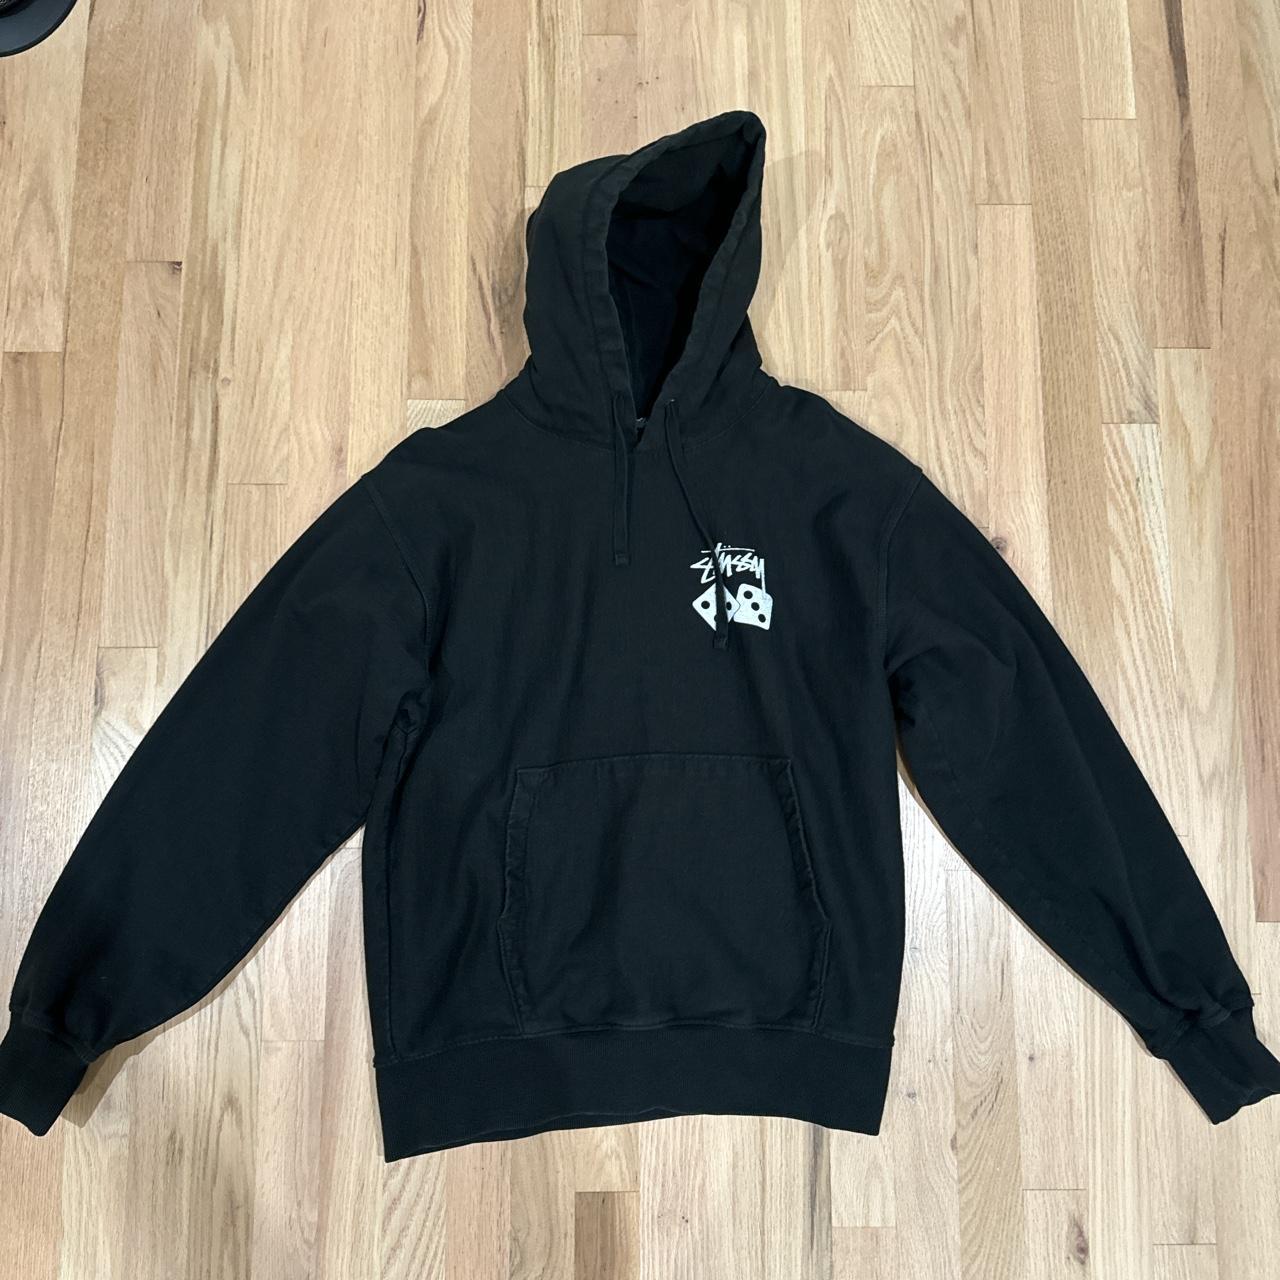 stussy dice hoodie size medium msg before buying - Depop